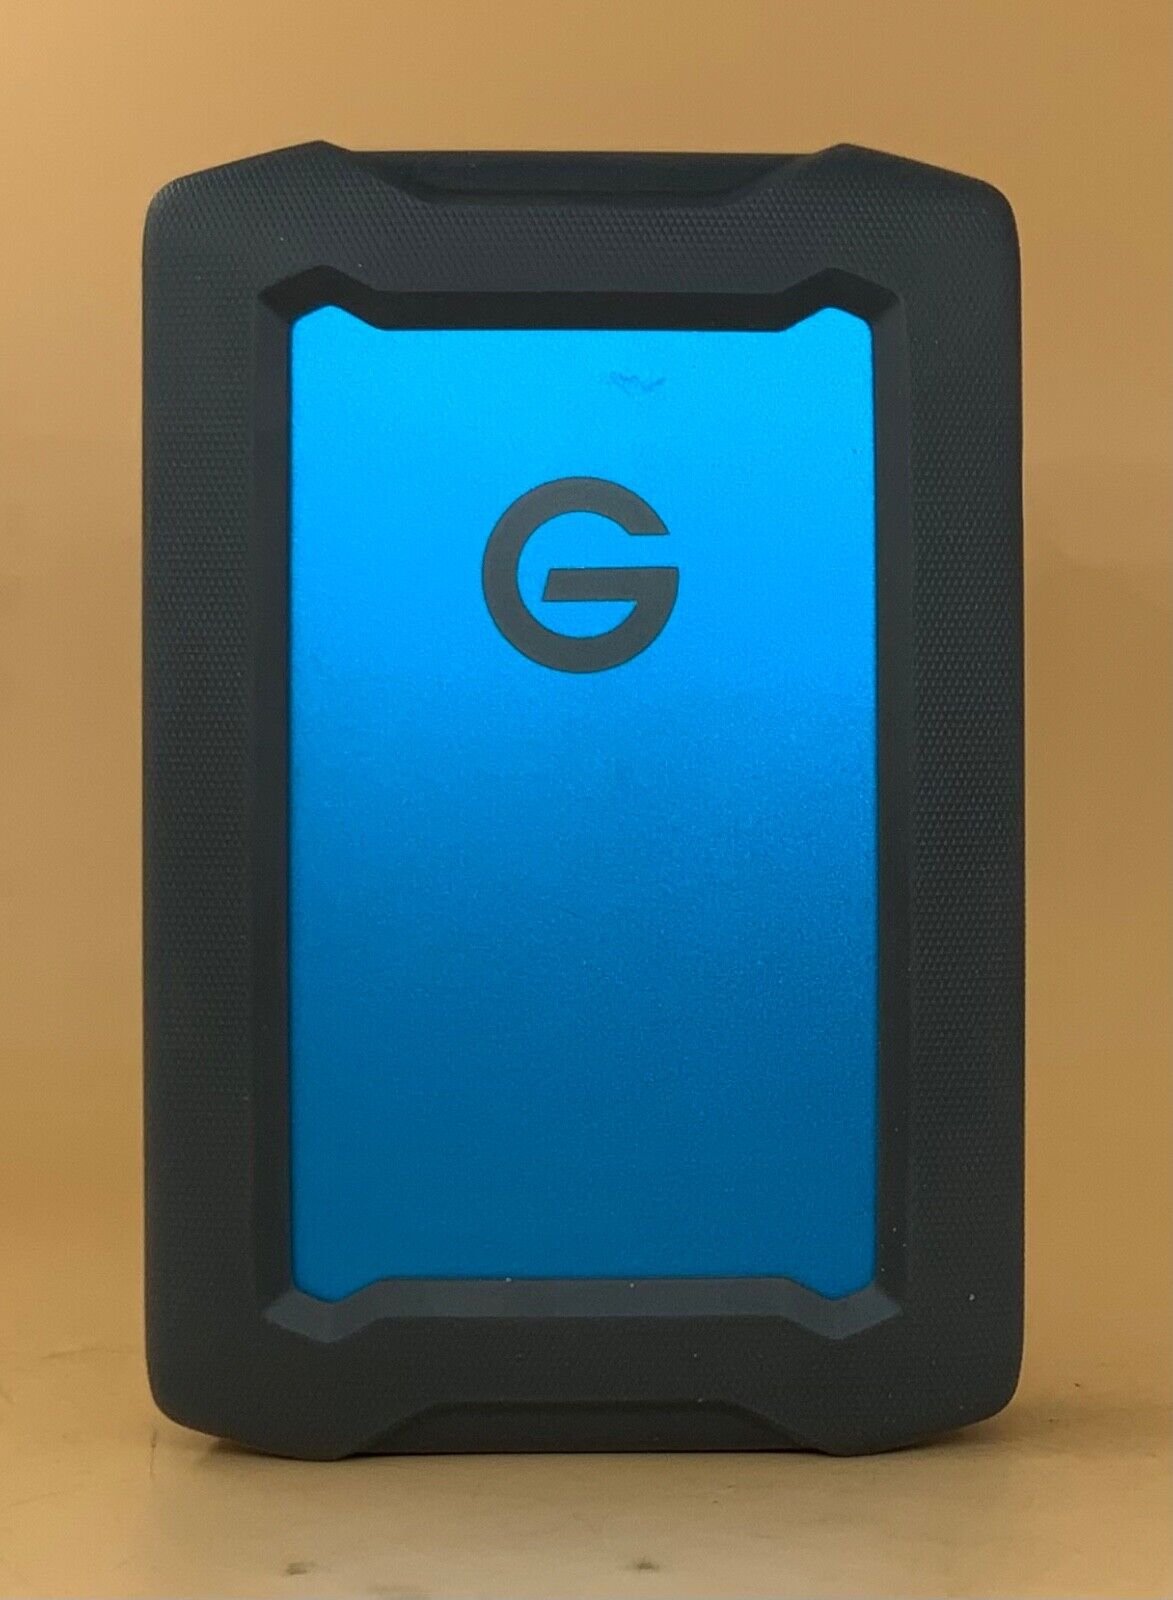 G-Technology 4TB G-DRIVE USB 3.0 Desktop External Hard Drive Blue Compact